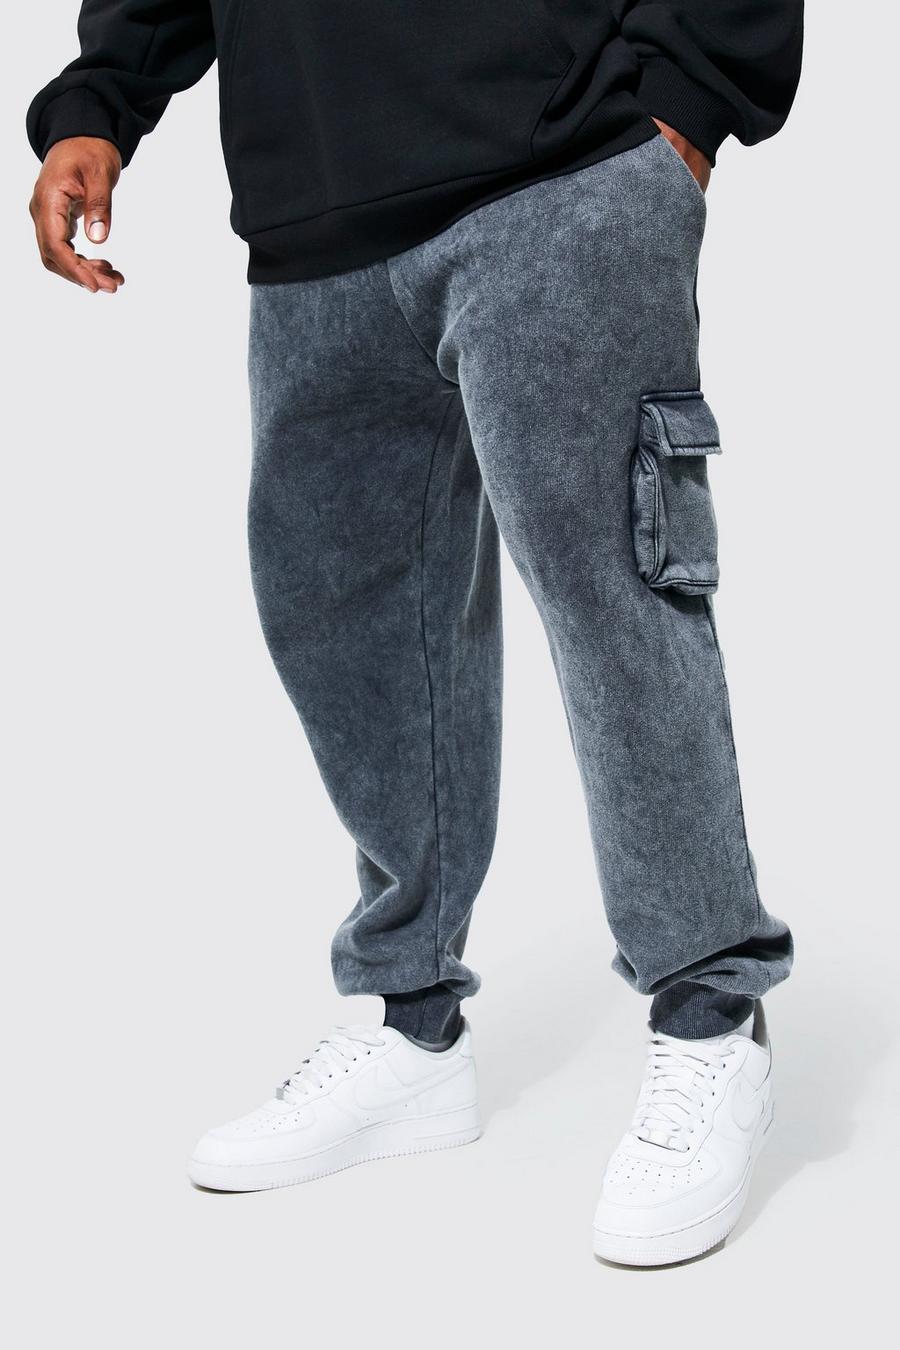 Pantalón deportivo Plus holgado cargo con lavado de ácido, Charcoal grigio